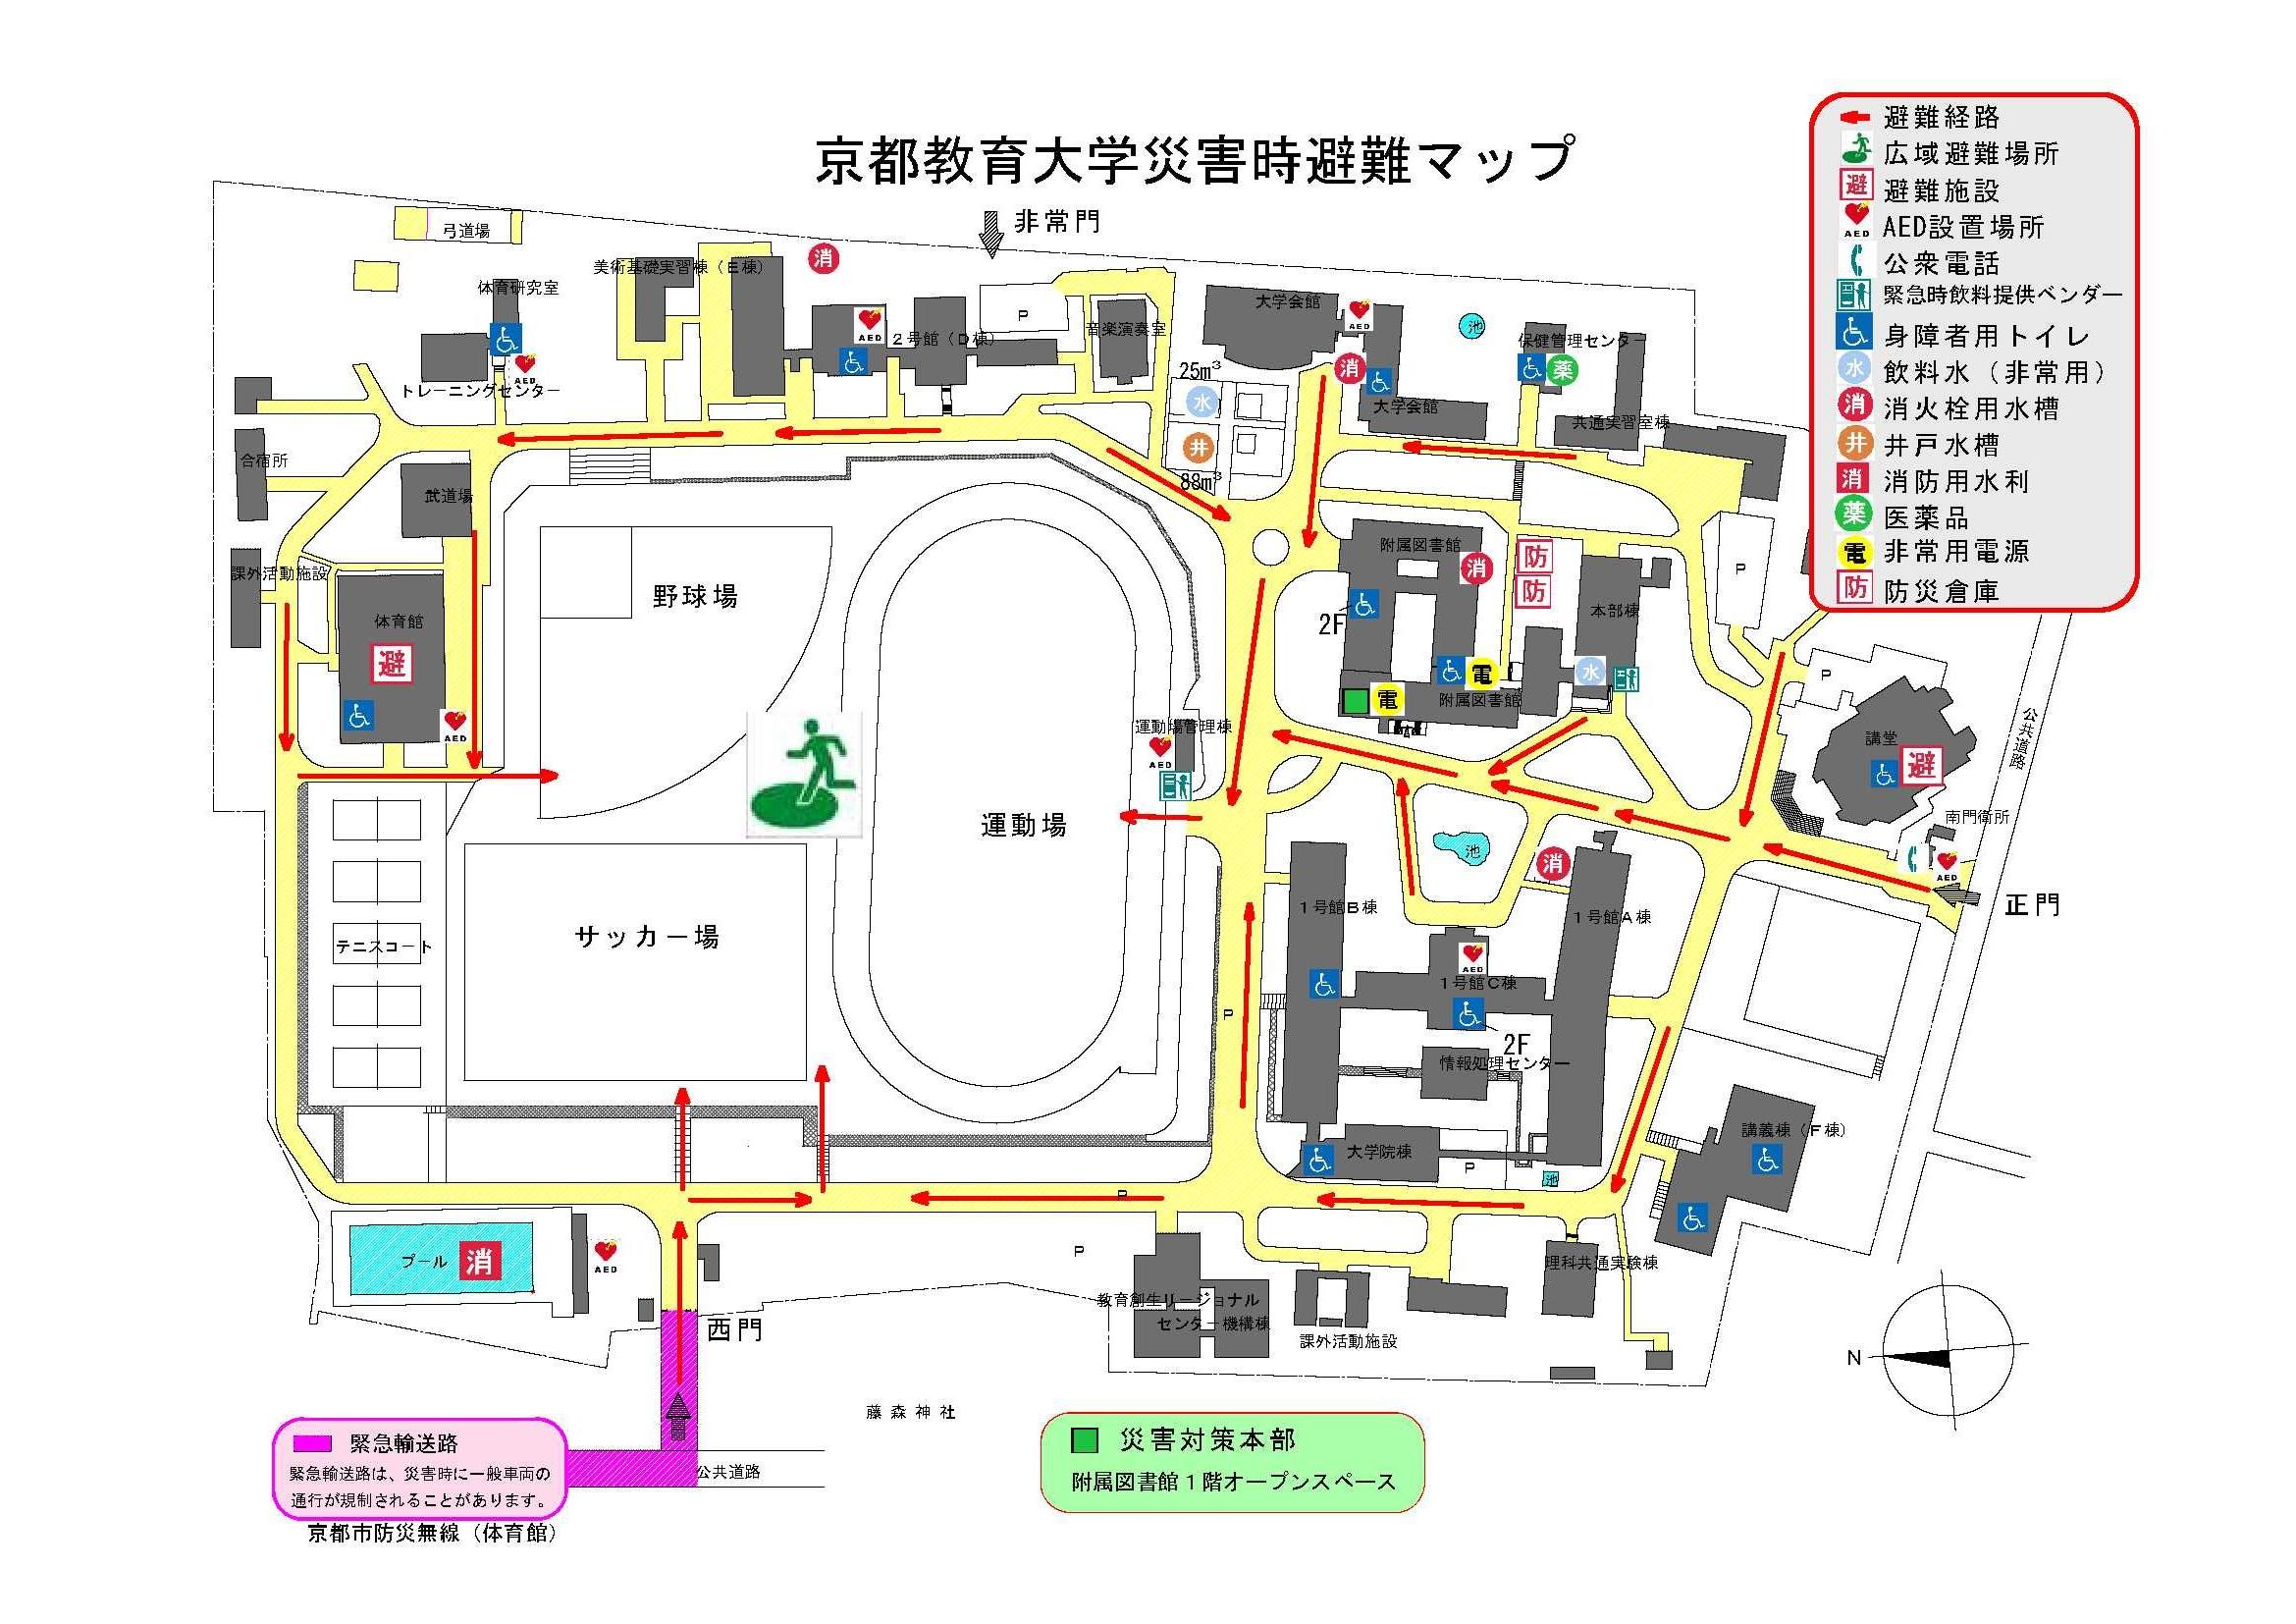 京都教育大学緊急避難マップ_R4.jpg